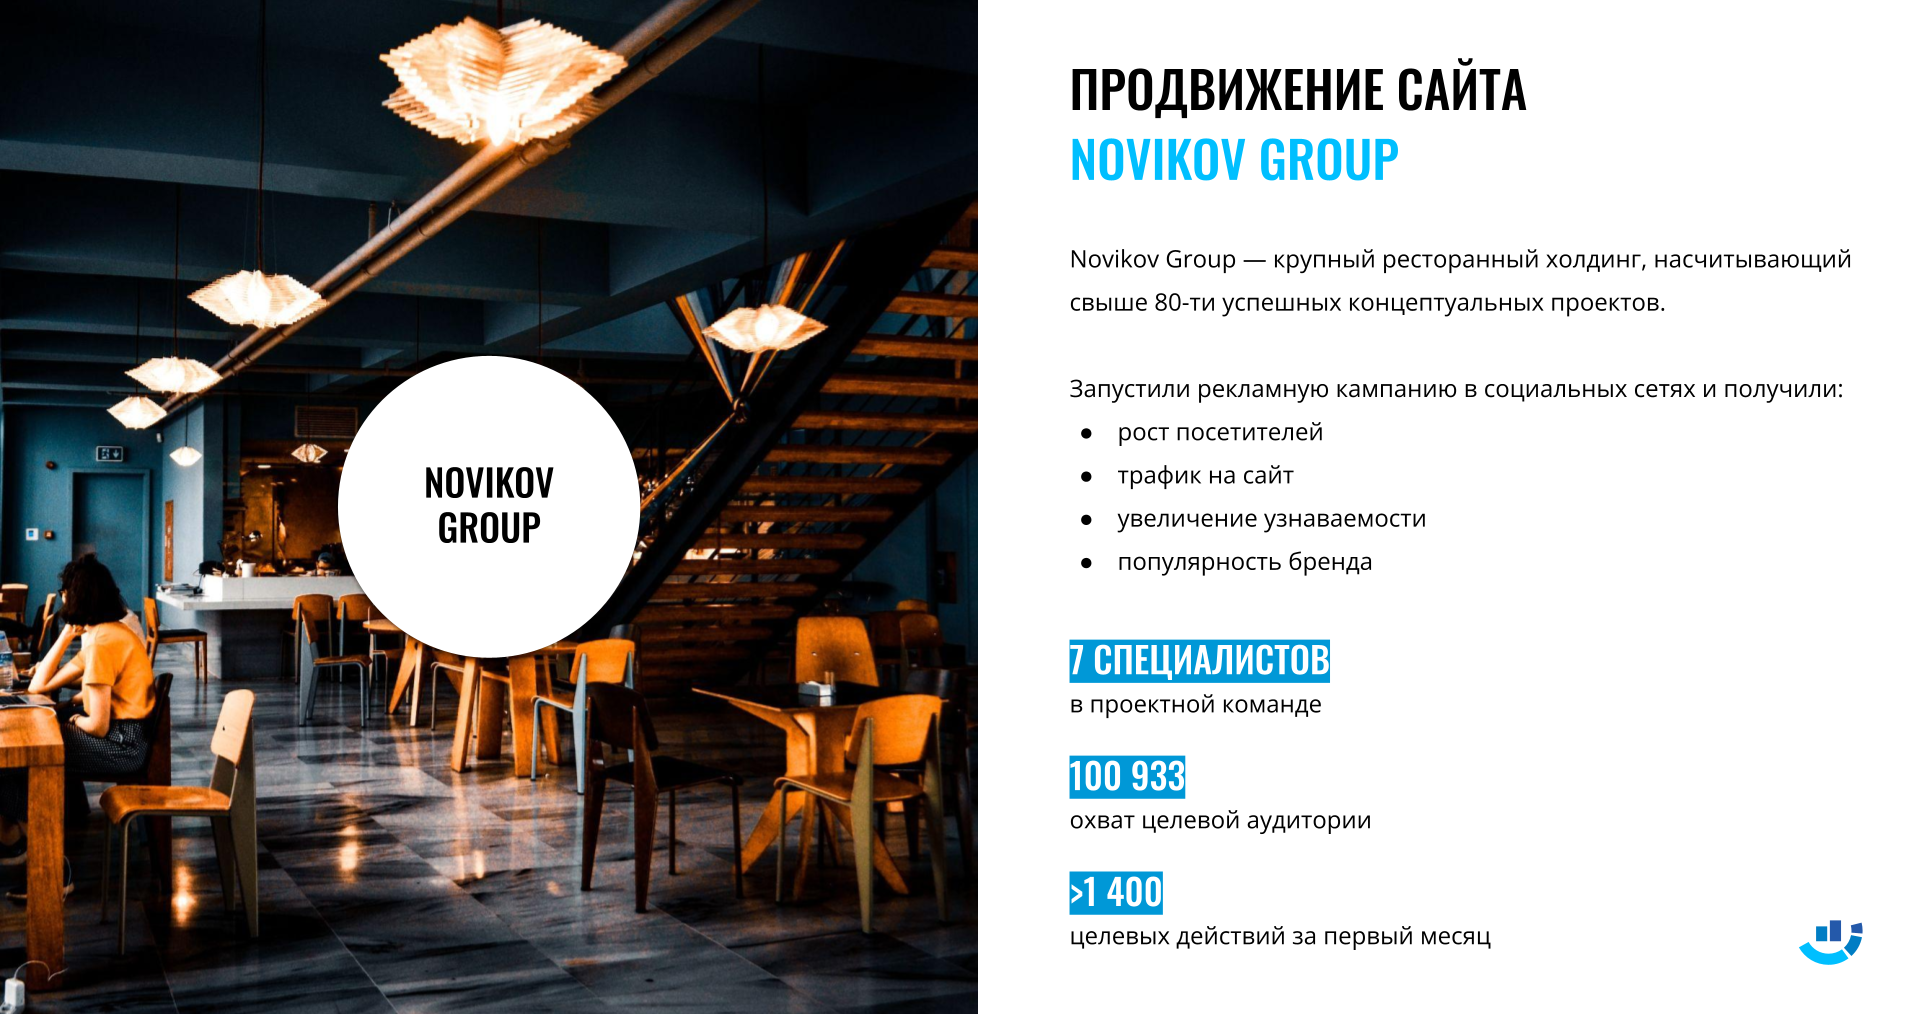 [Кейс] Ресторанный бизнес. Продвижение сайта бренда Novikov Group